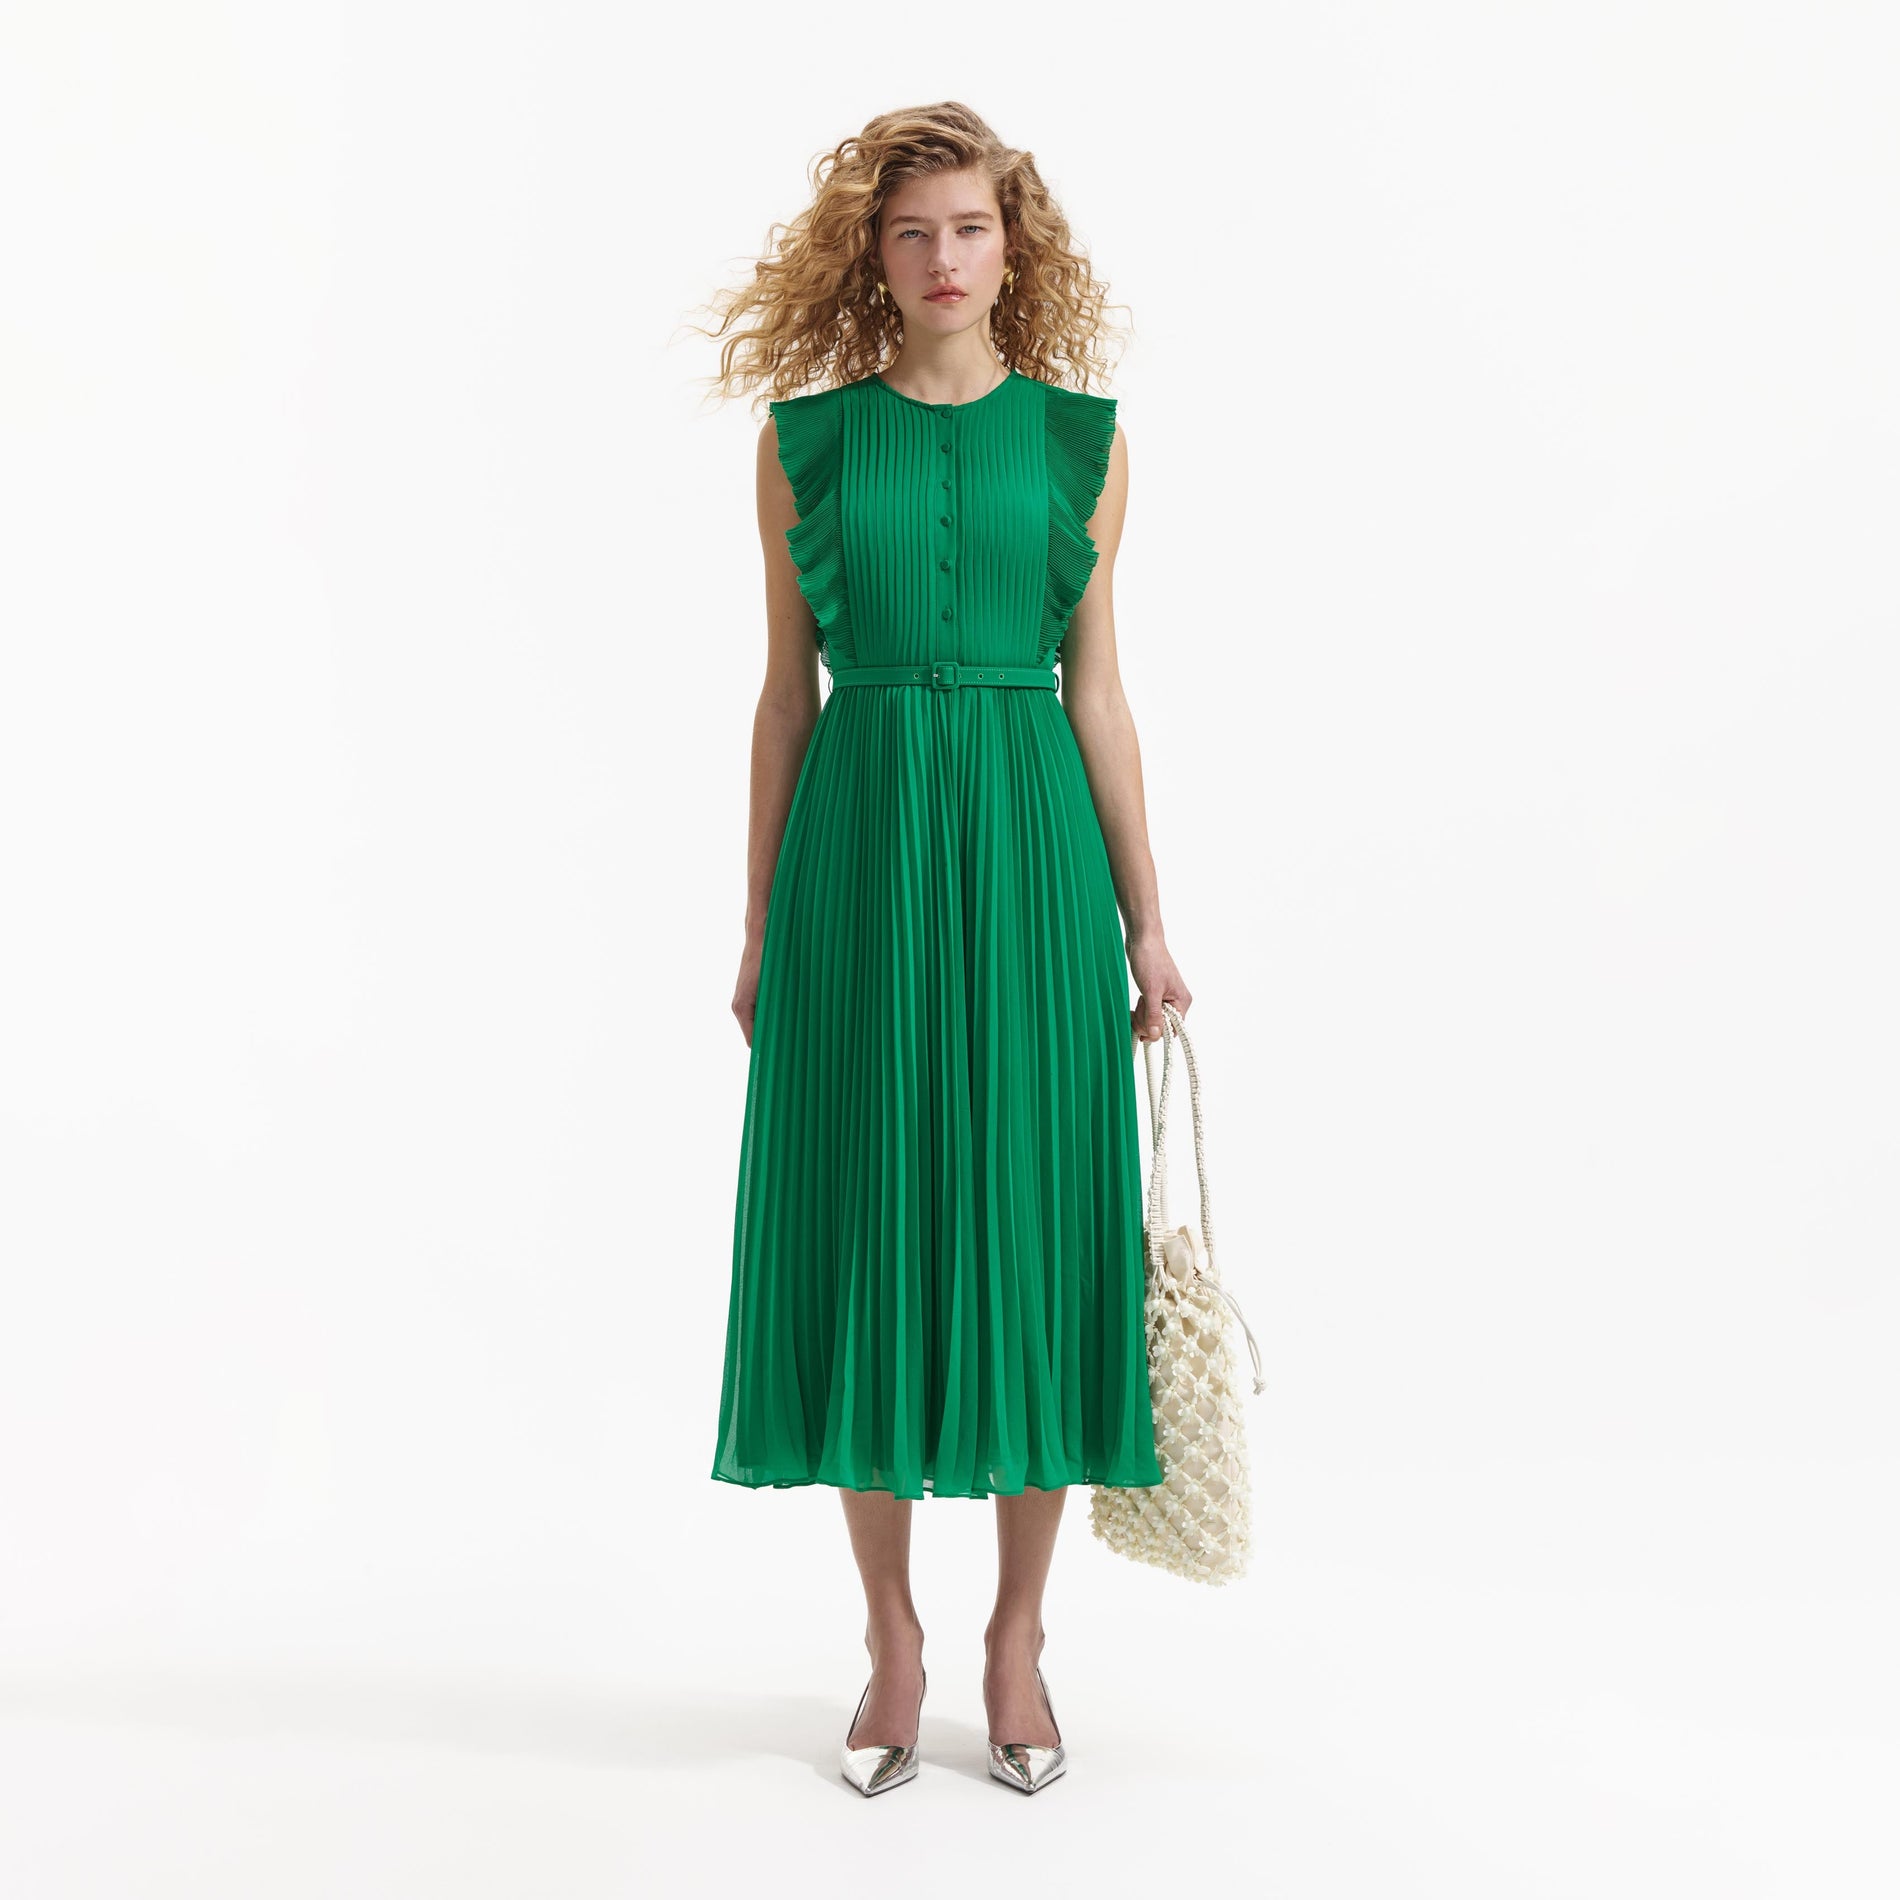 A Woman wearing the Green Chiffon Sleeveless Ruffle Midi Dress